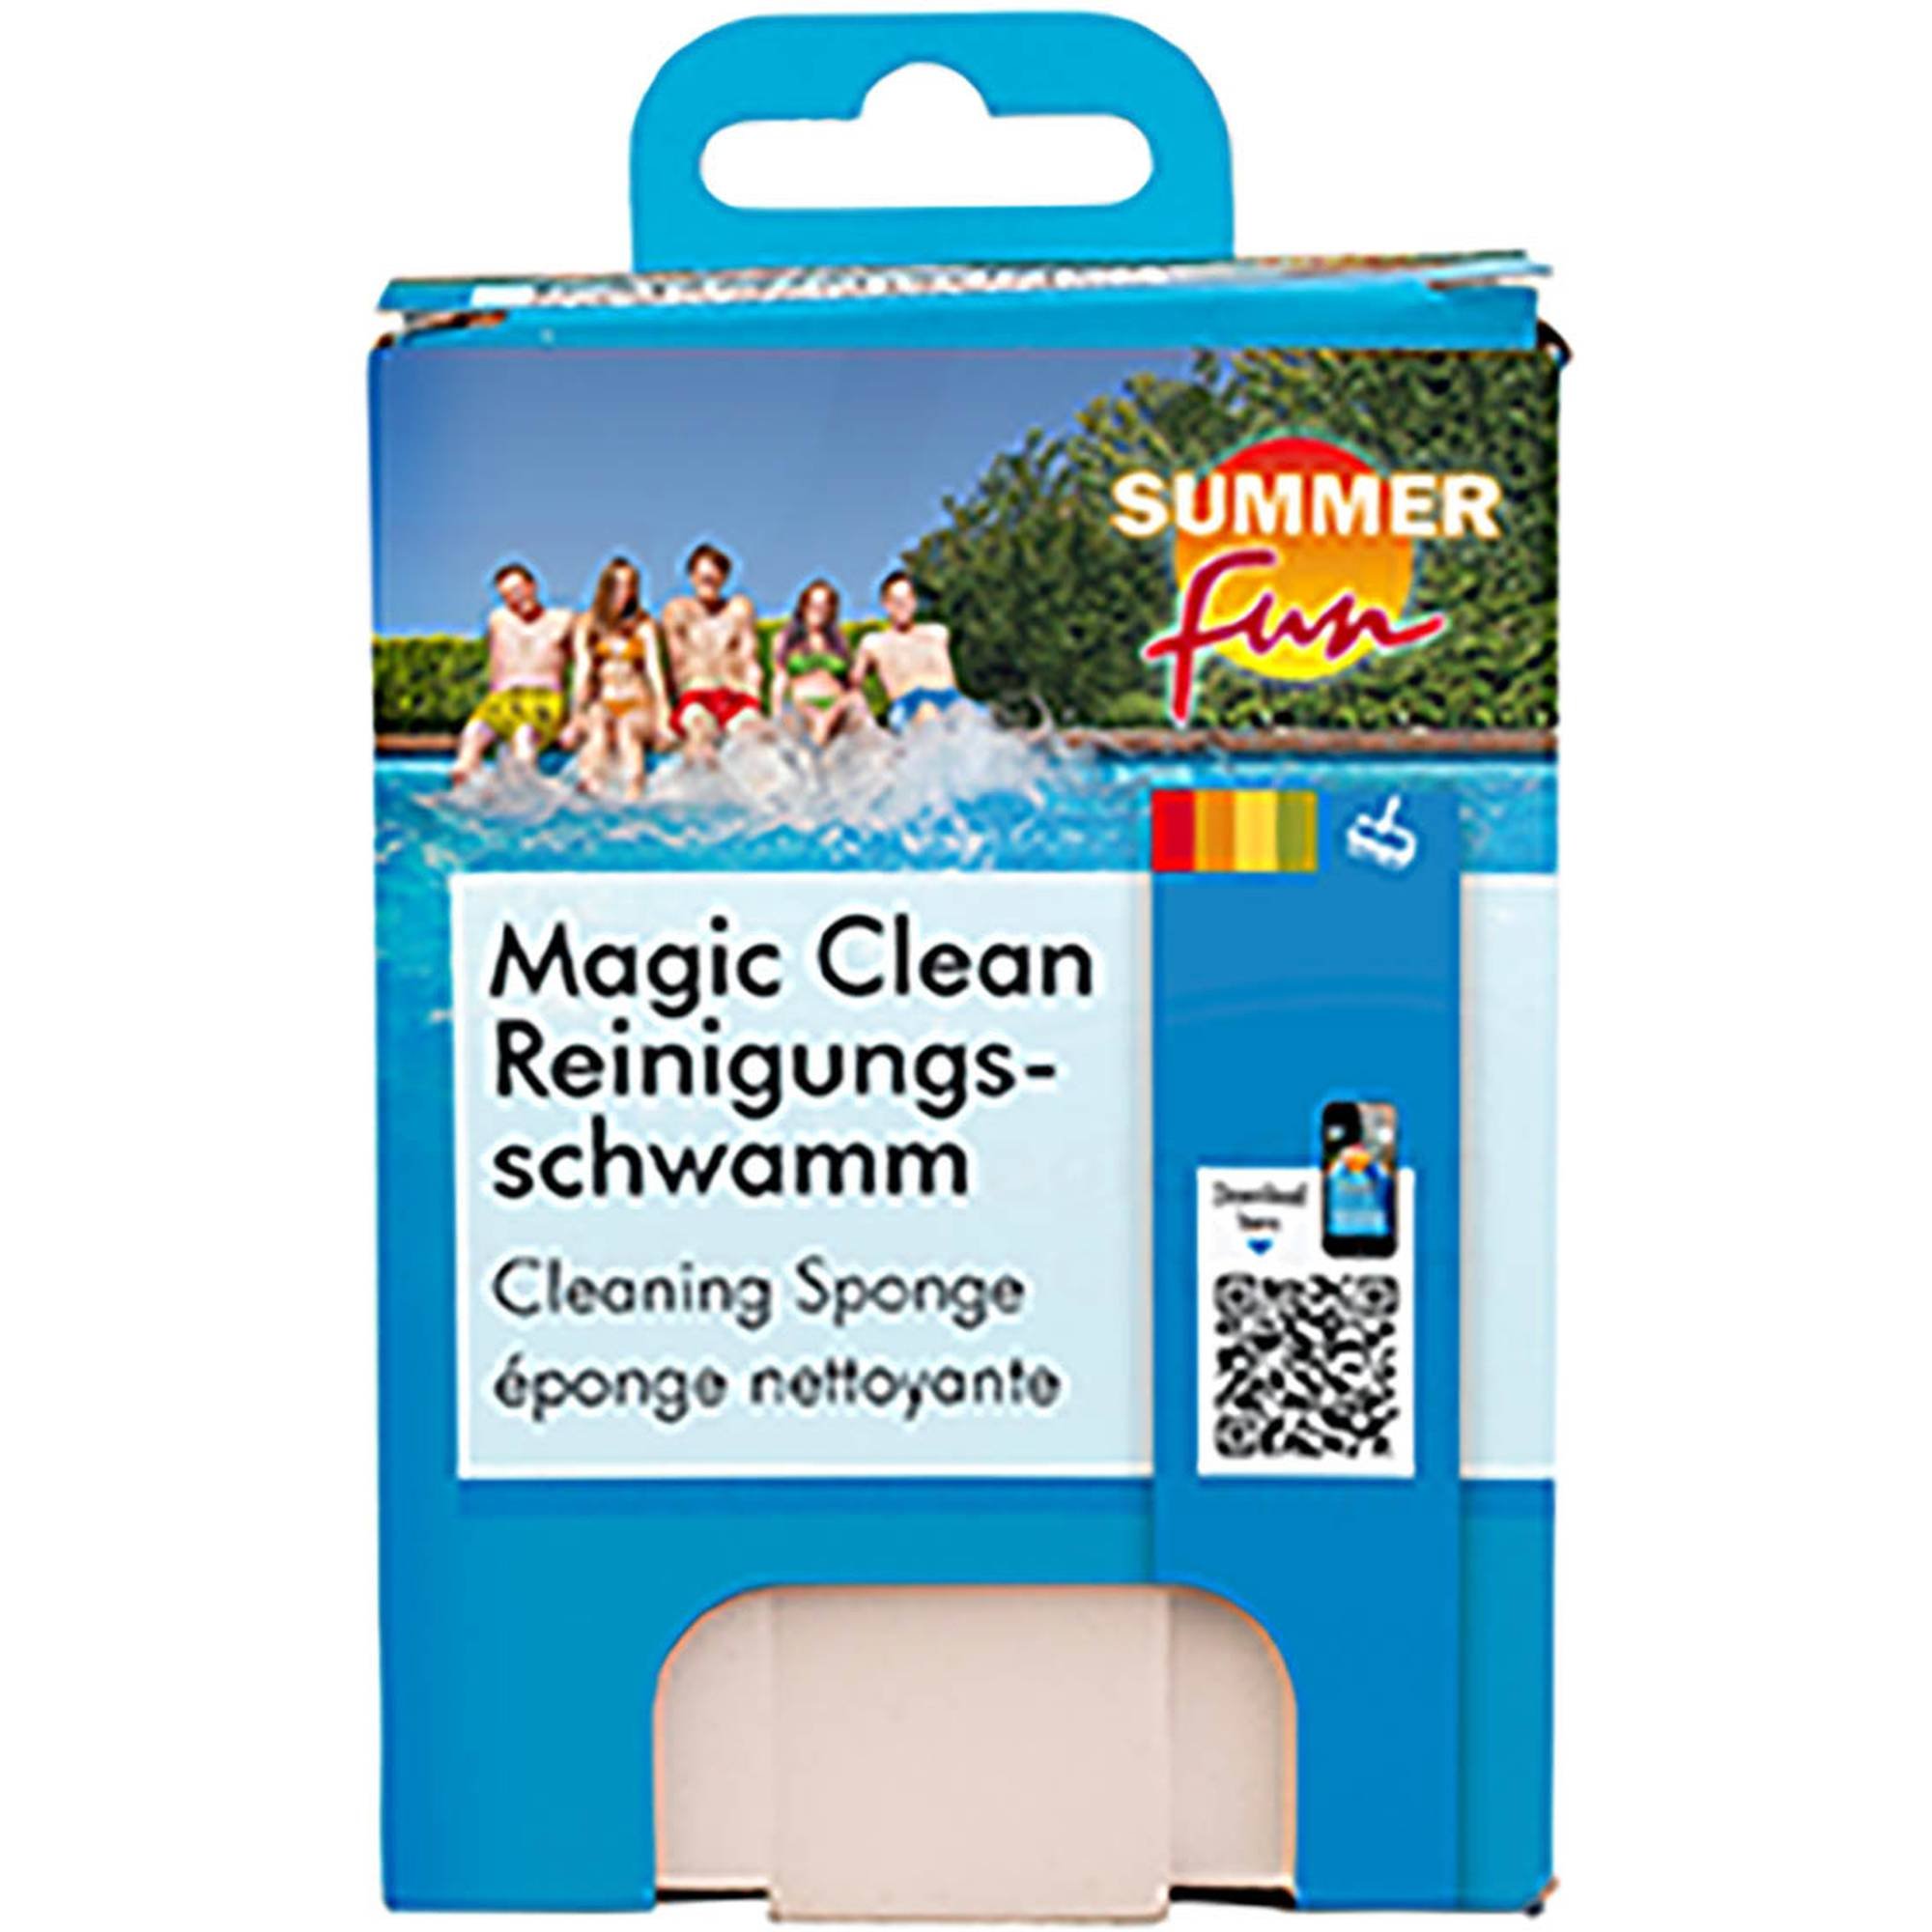 Magic Clean Reinigungsschwamm